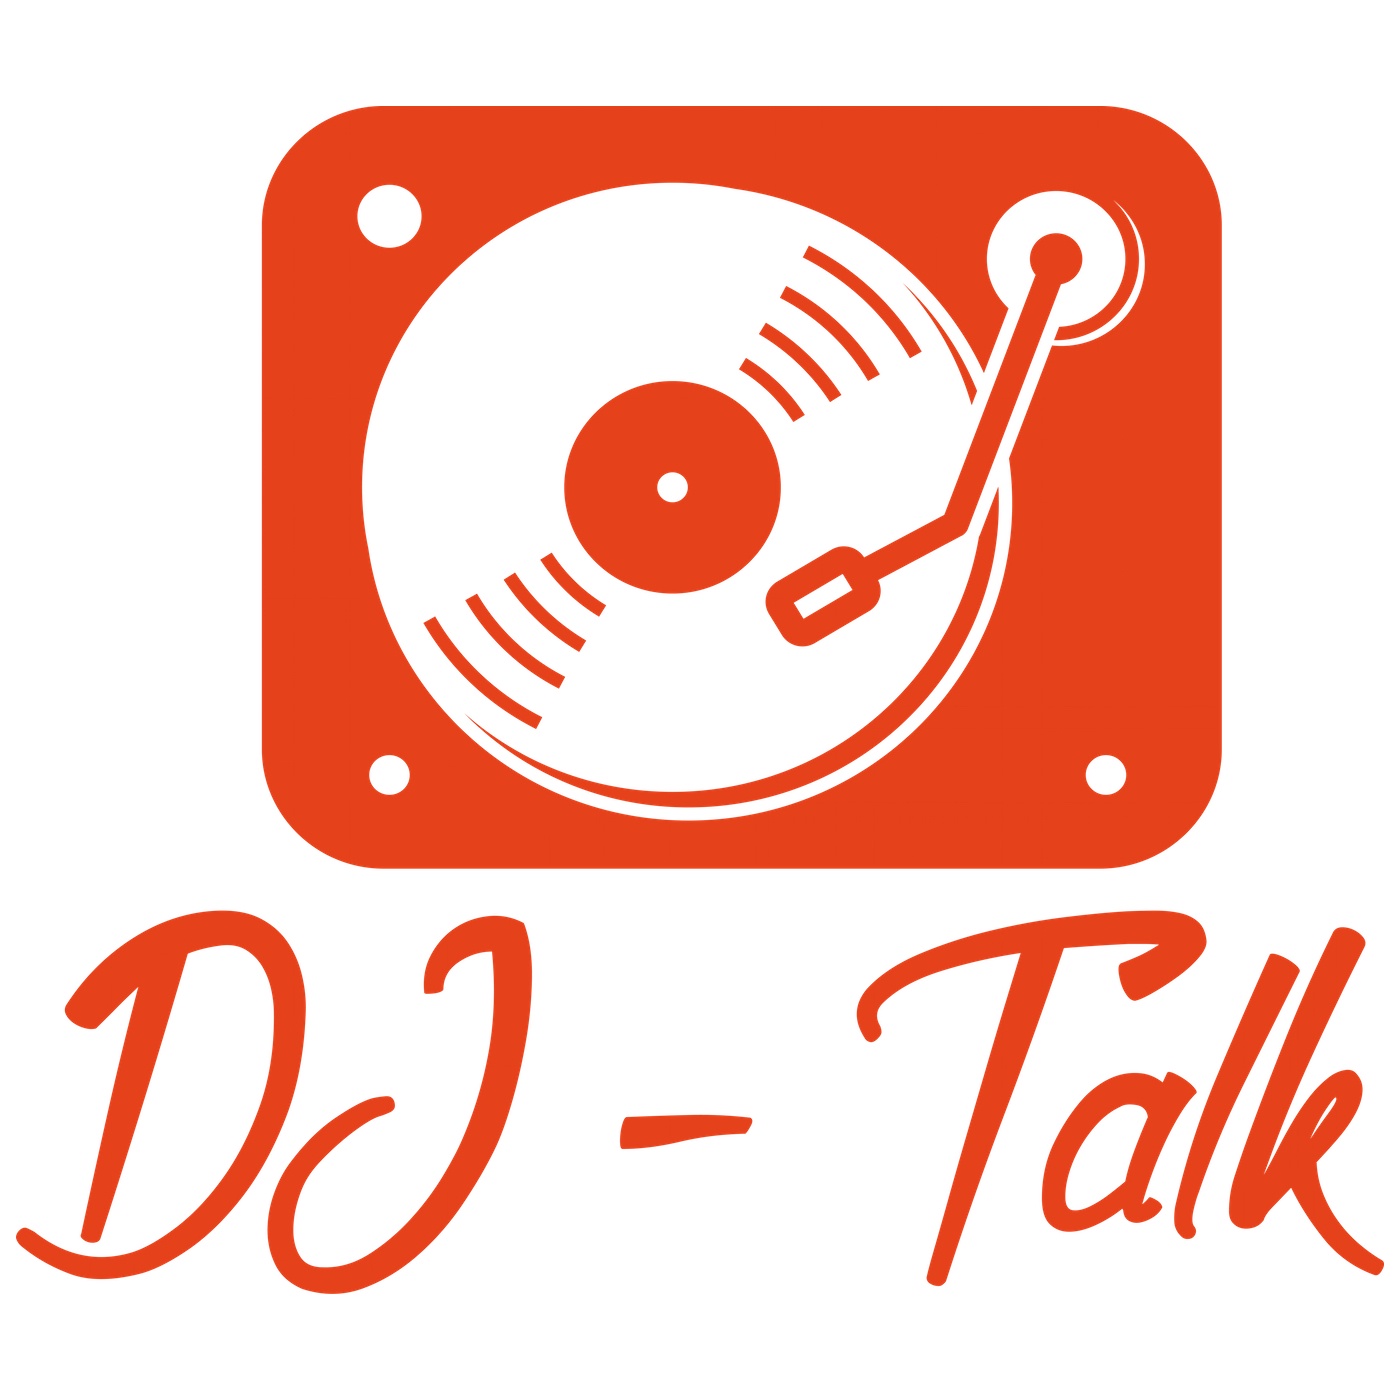 DJ Talk